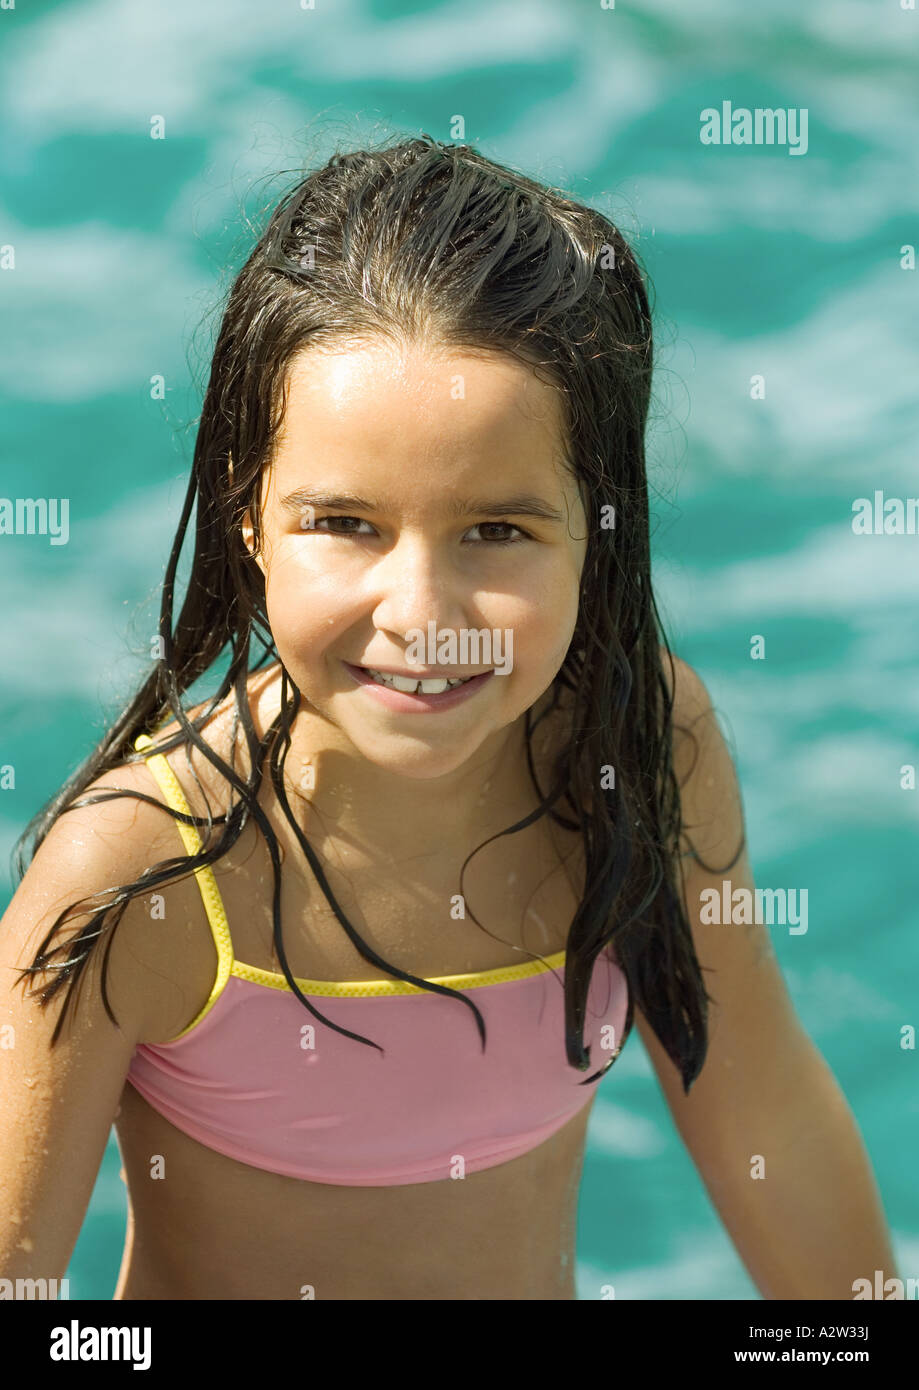 Mädchen Im Badeanzug Wasser Im Hintergrund Porträt Stockfotografie Alamy 6683